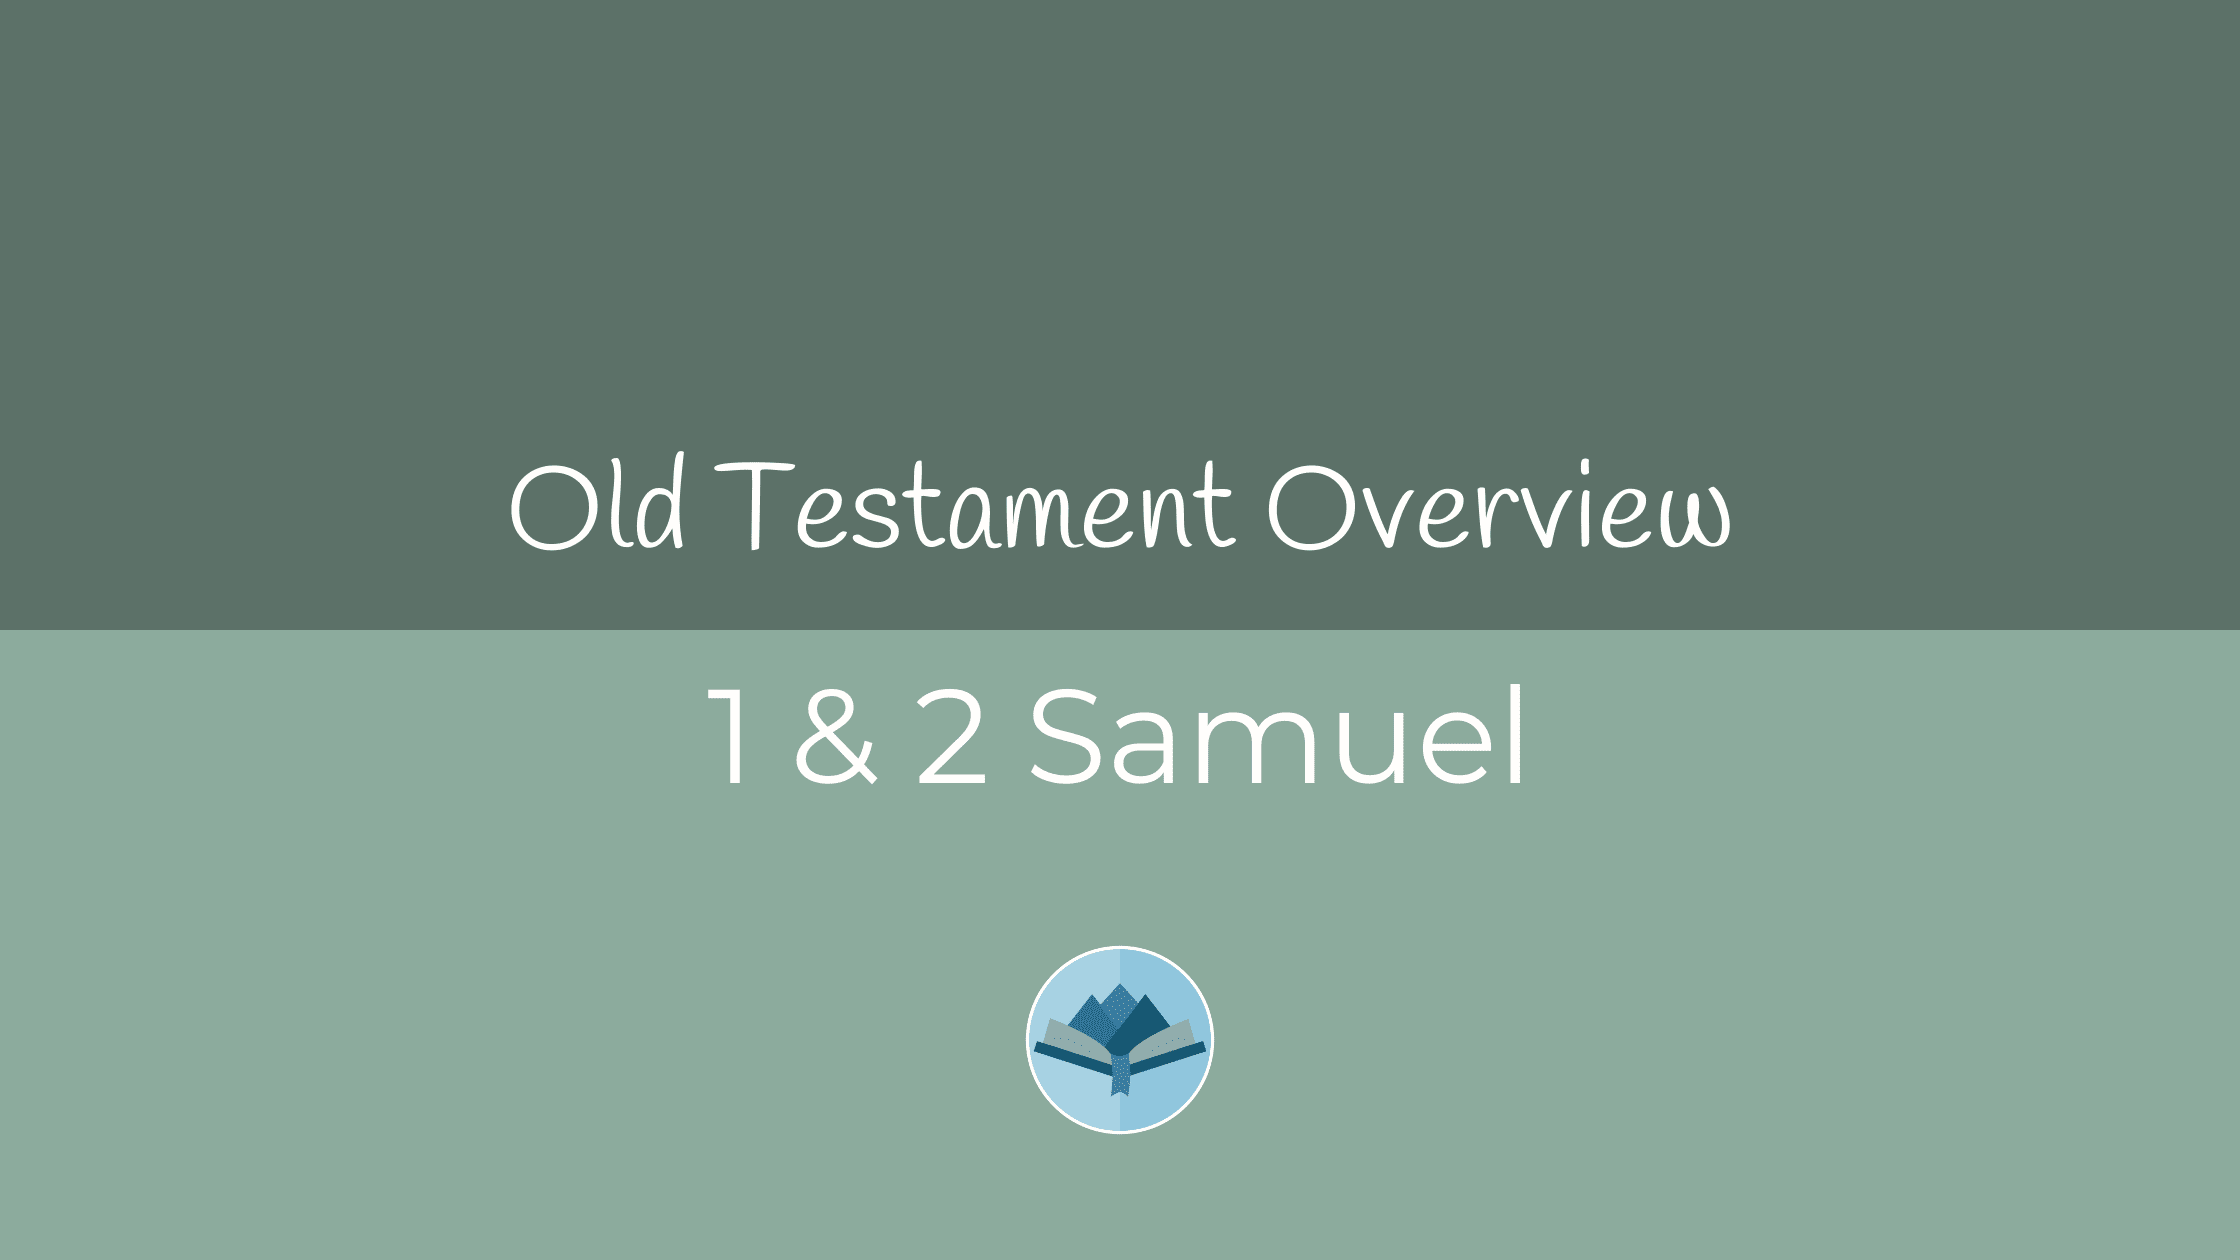 1 & 2 Samuel Overview